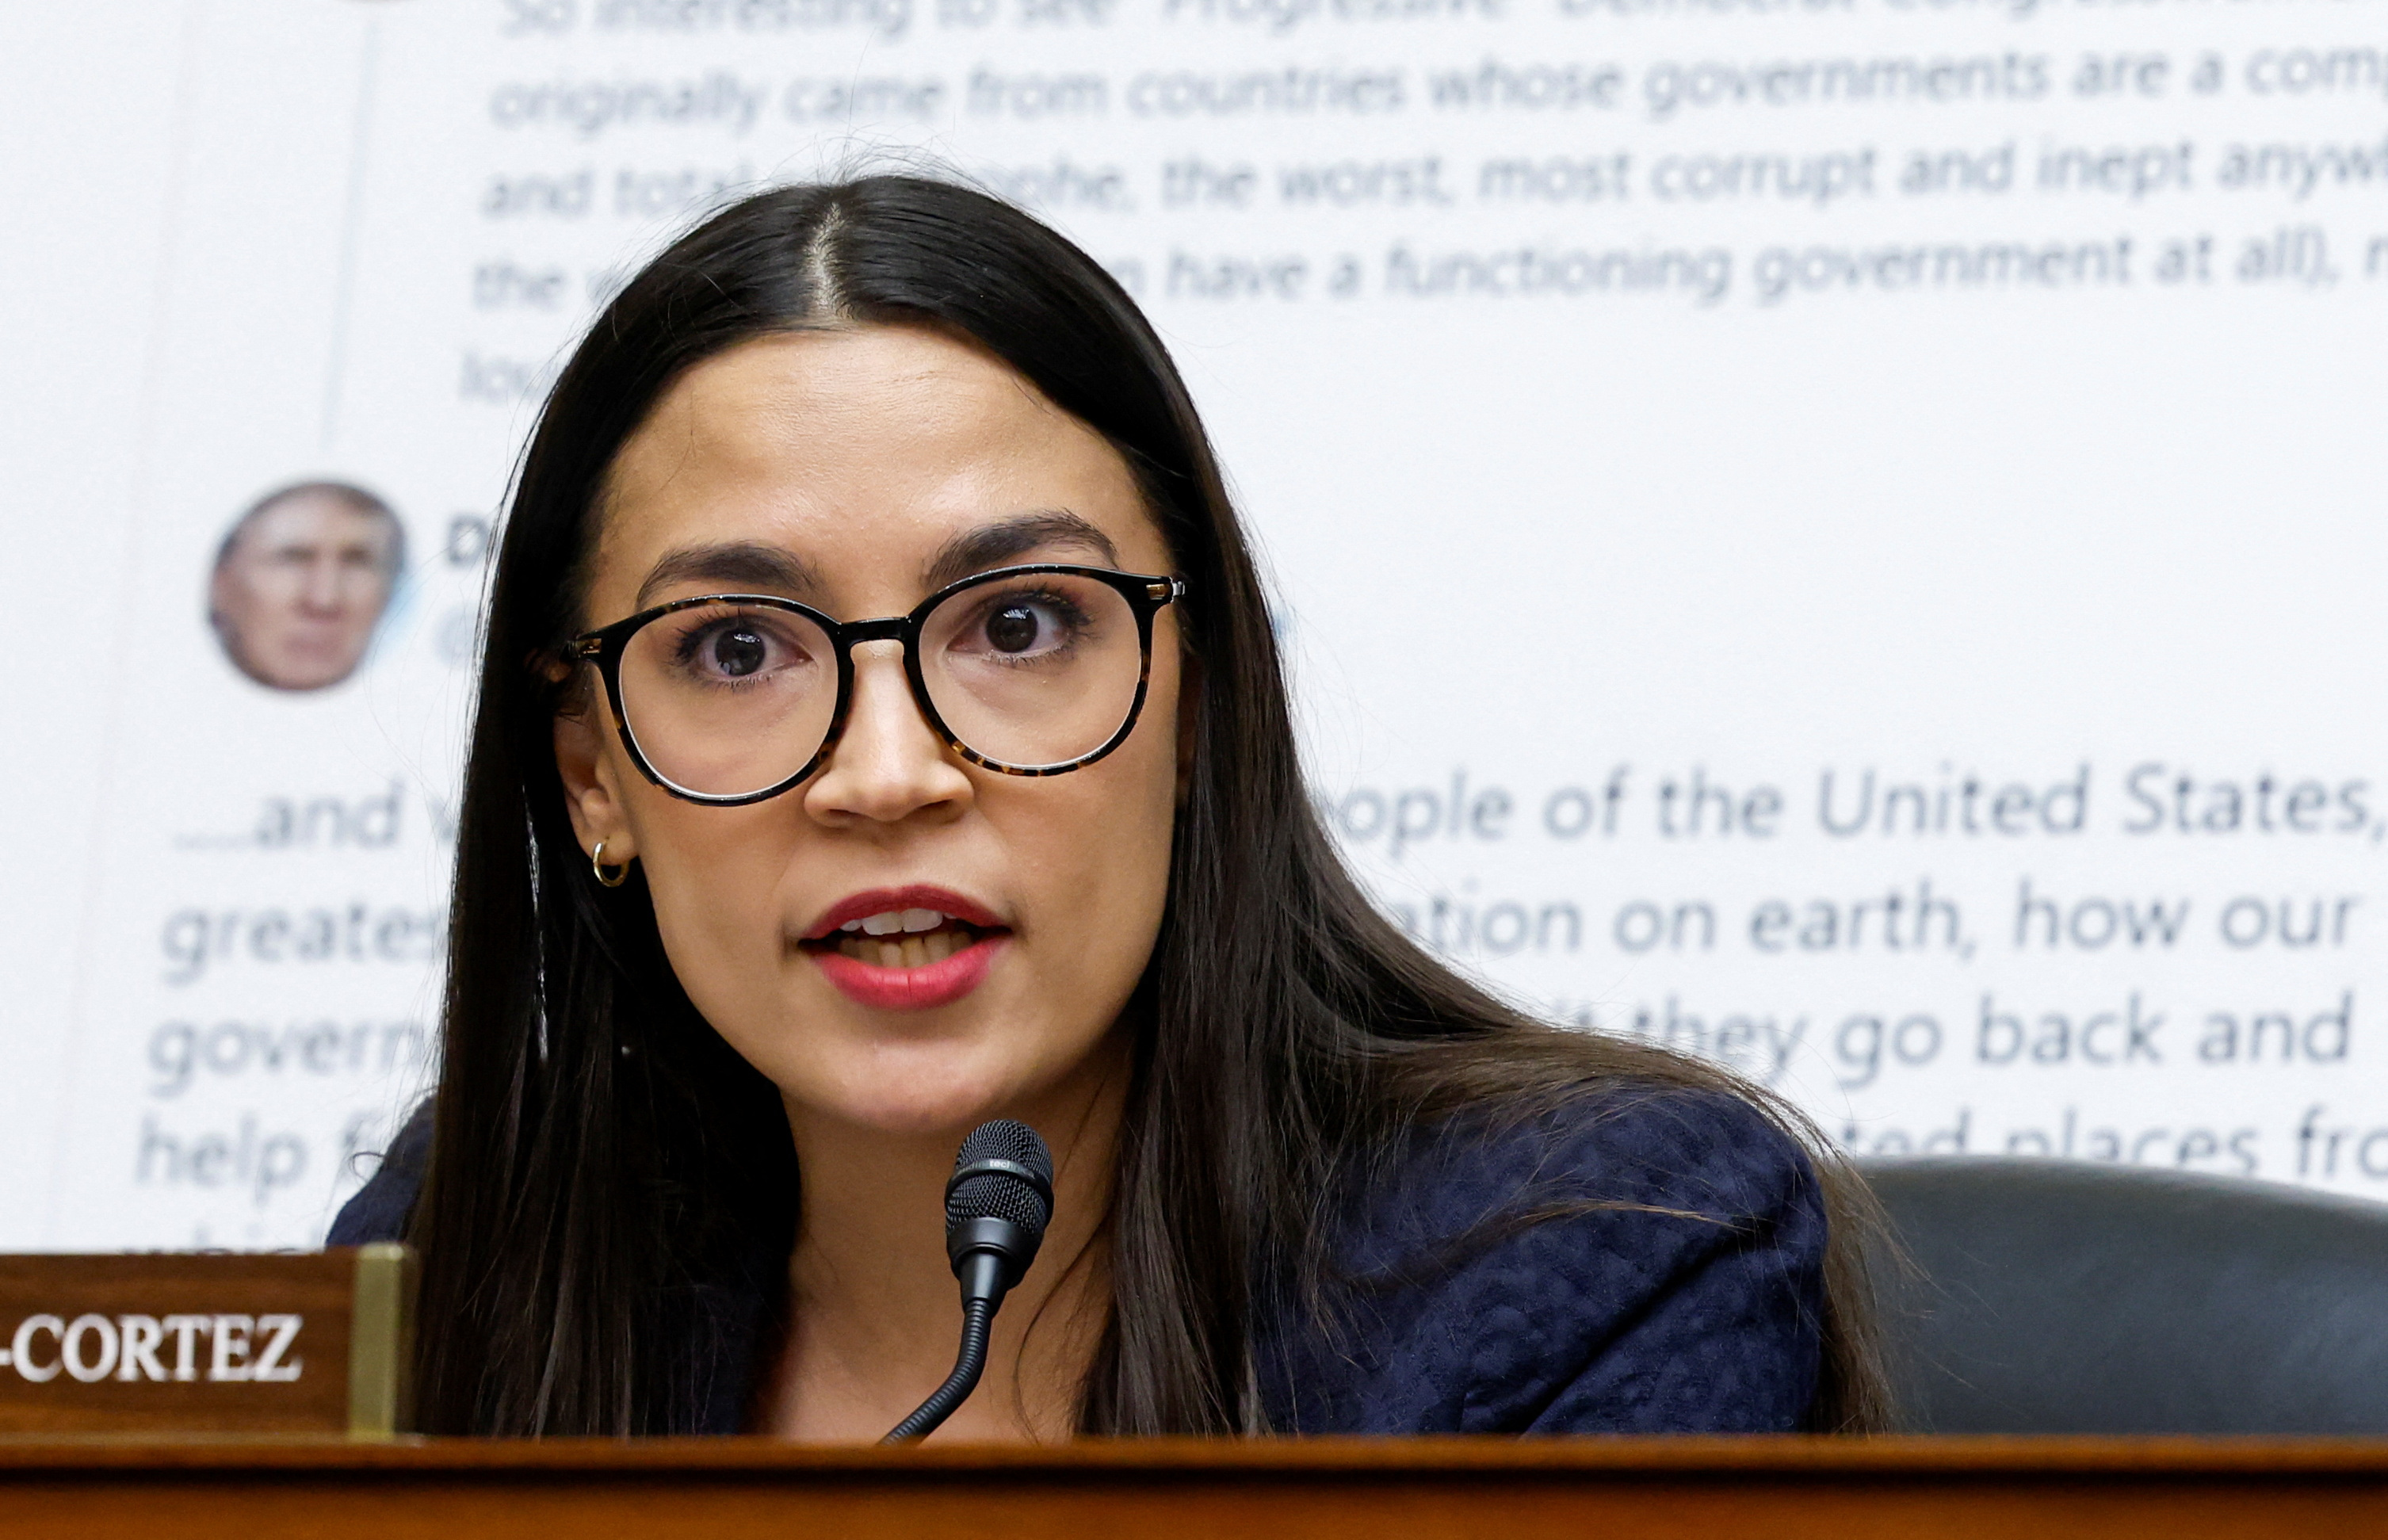 Alexandria Ocasio-Cortez cuestionó a Twitter por haber permitido la publicación de un polémico mensaje de Trump, al que calificó de racista y xenófobo (Reuters/Evelyn Hockstein)